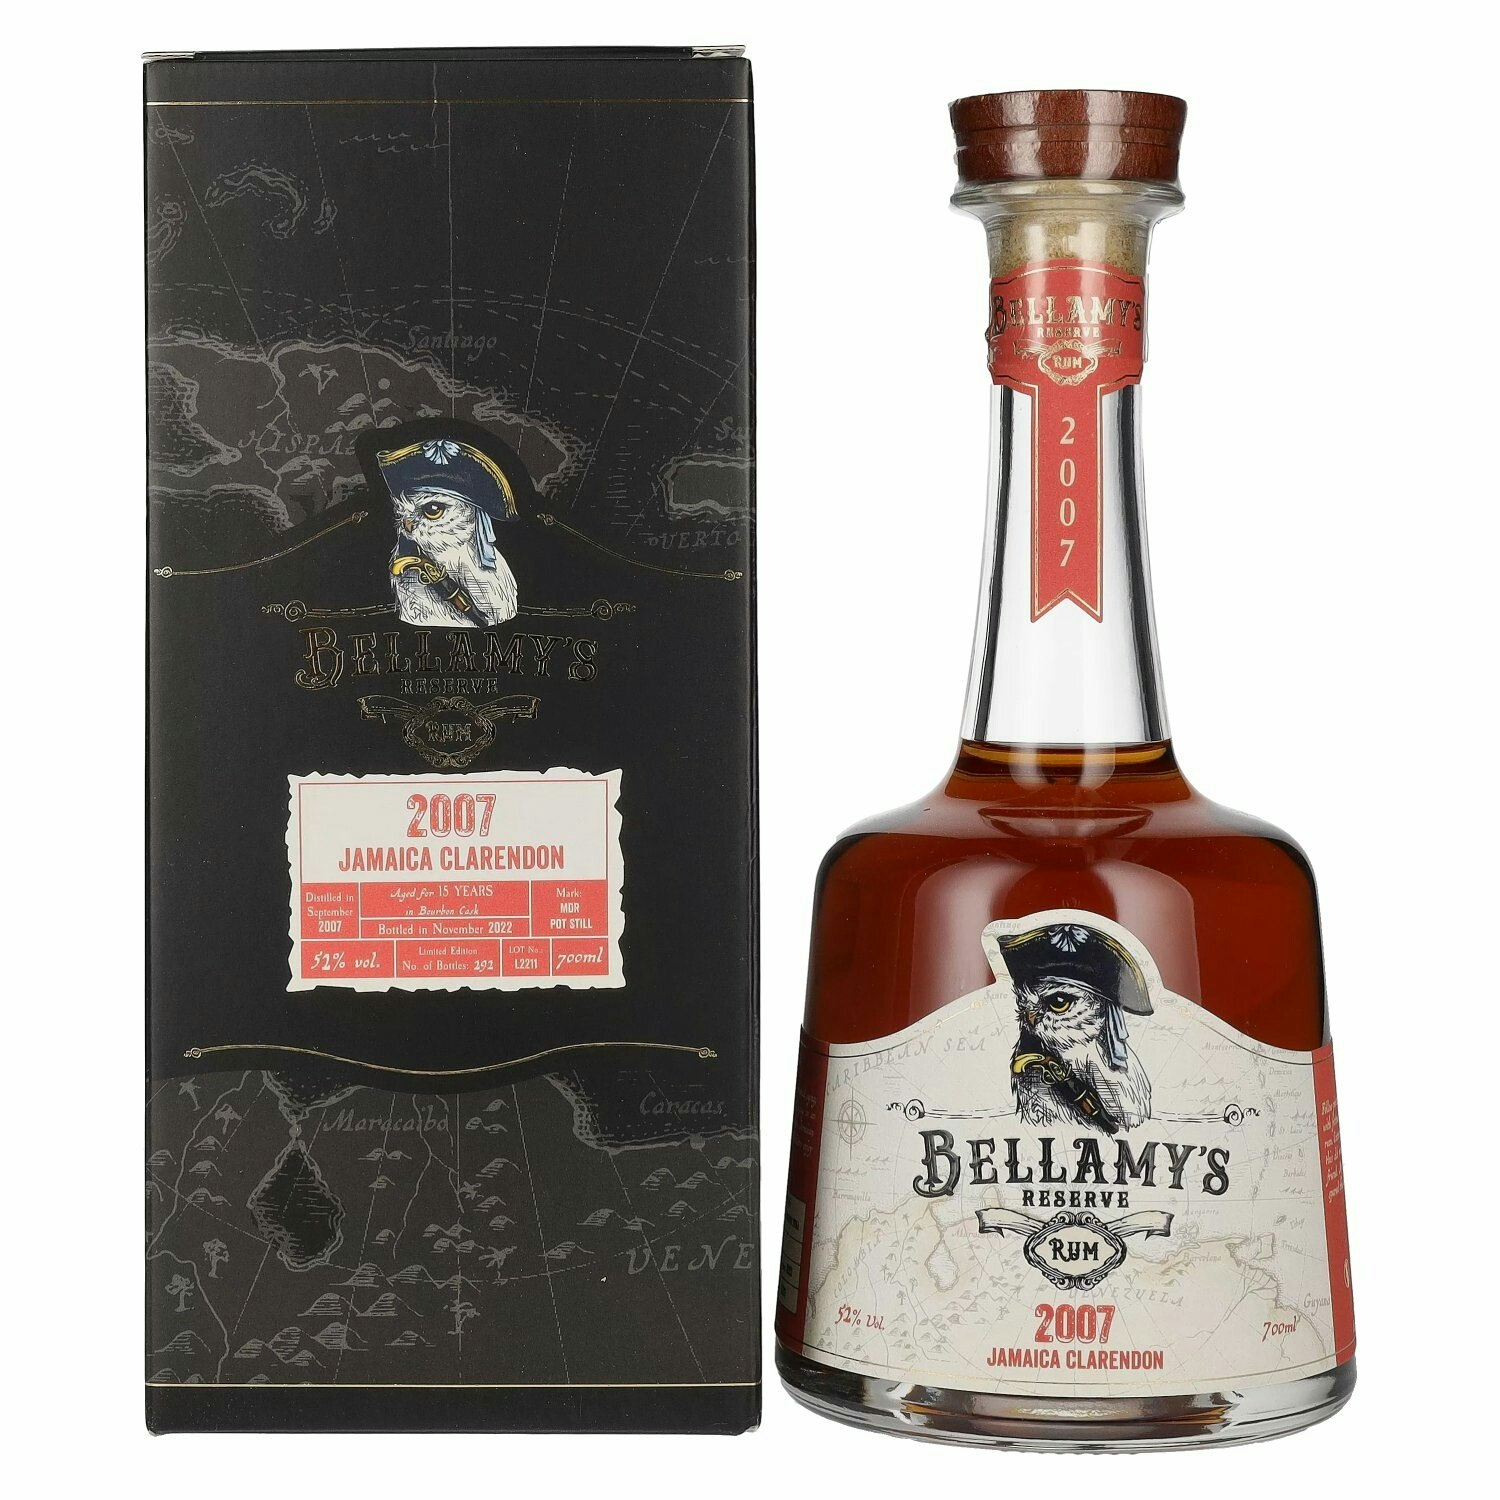 Bellamy's Reserve Rum Jamaica Clarendon 2007 52% Vol. 0,7l in Giftbox